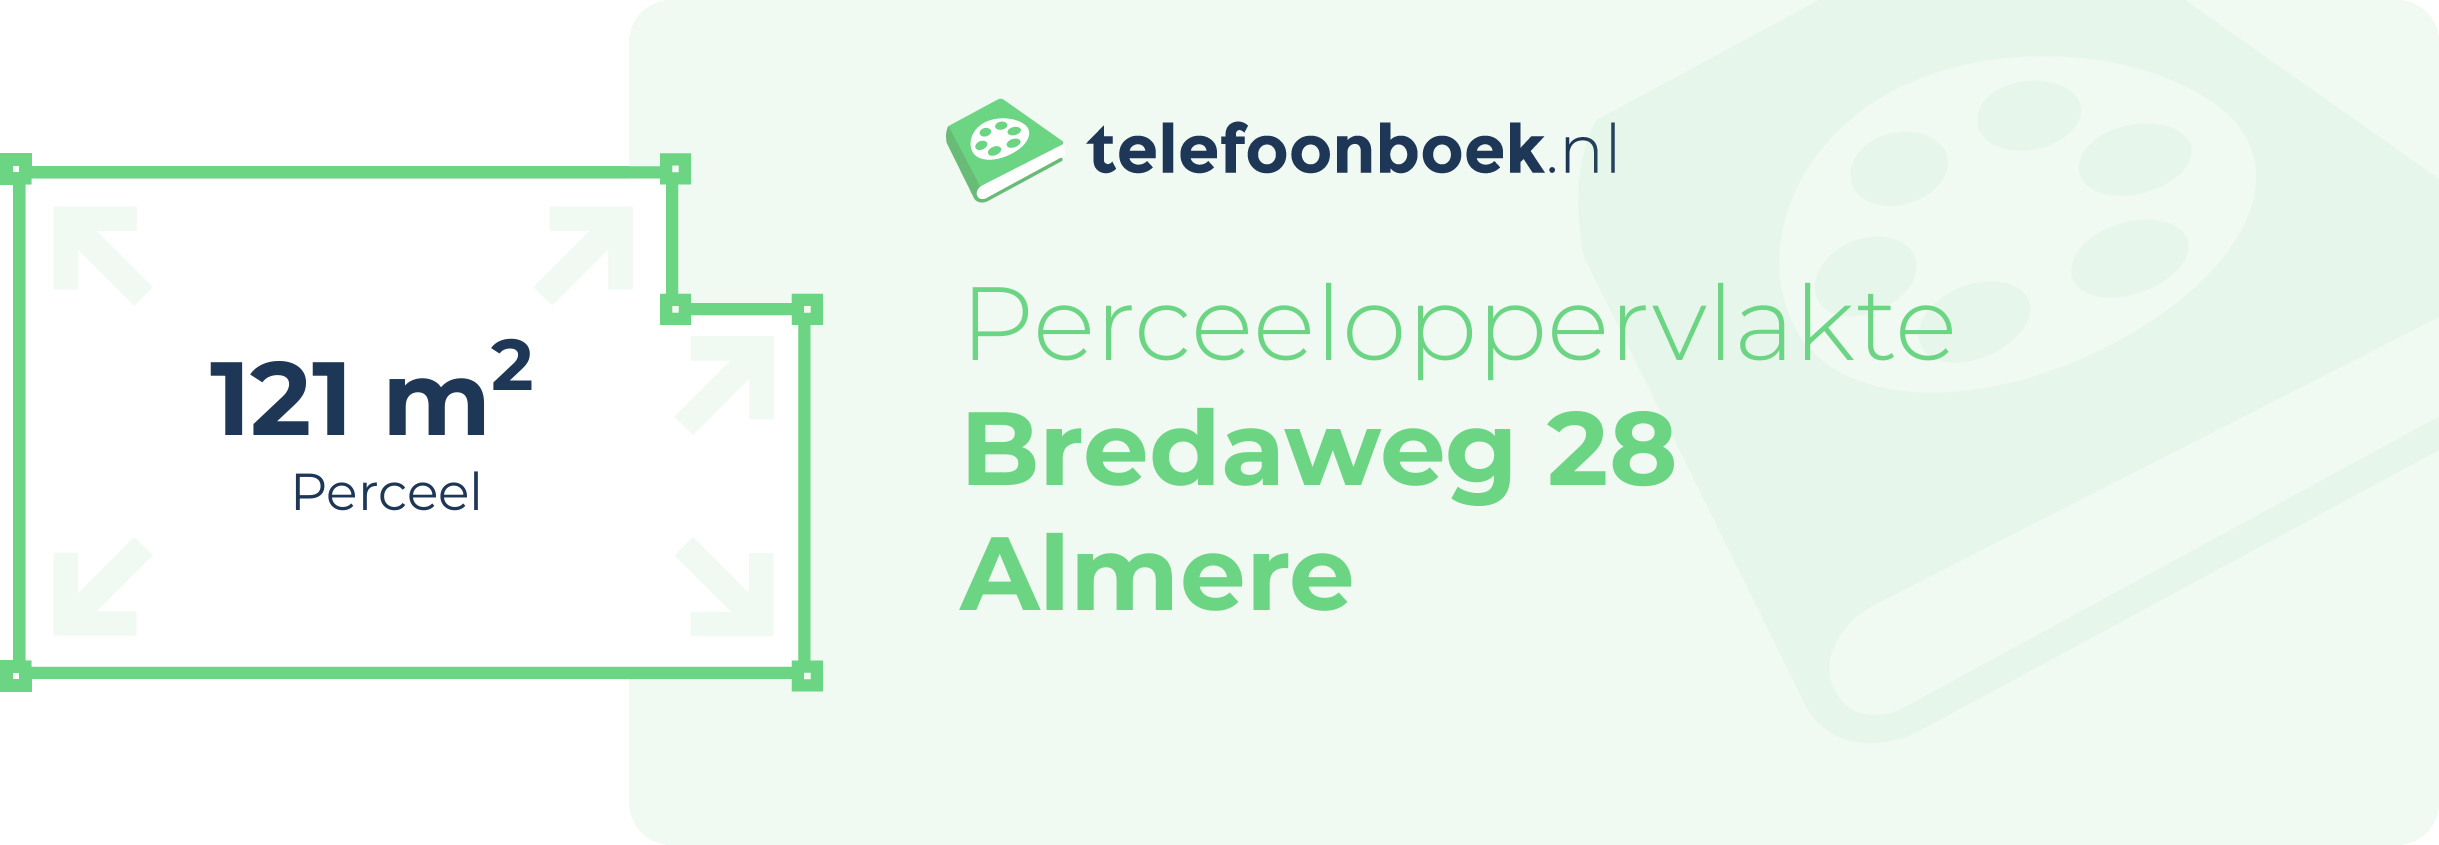 Perceeloppervlakte Bredaweg 28 Almere